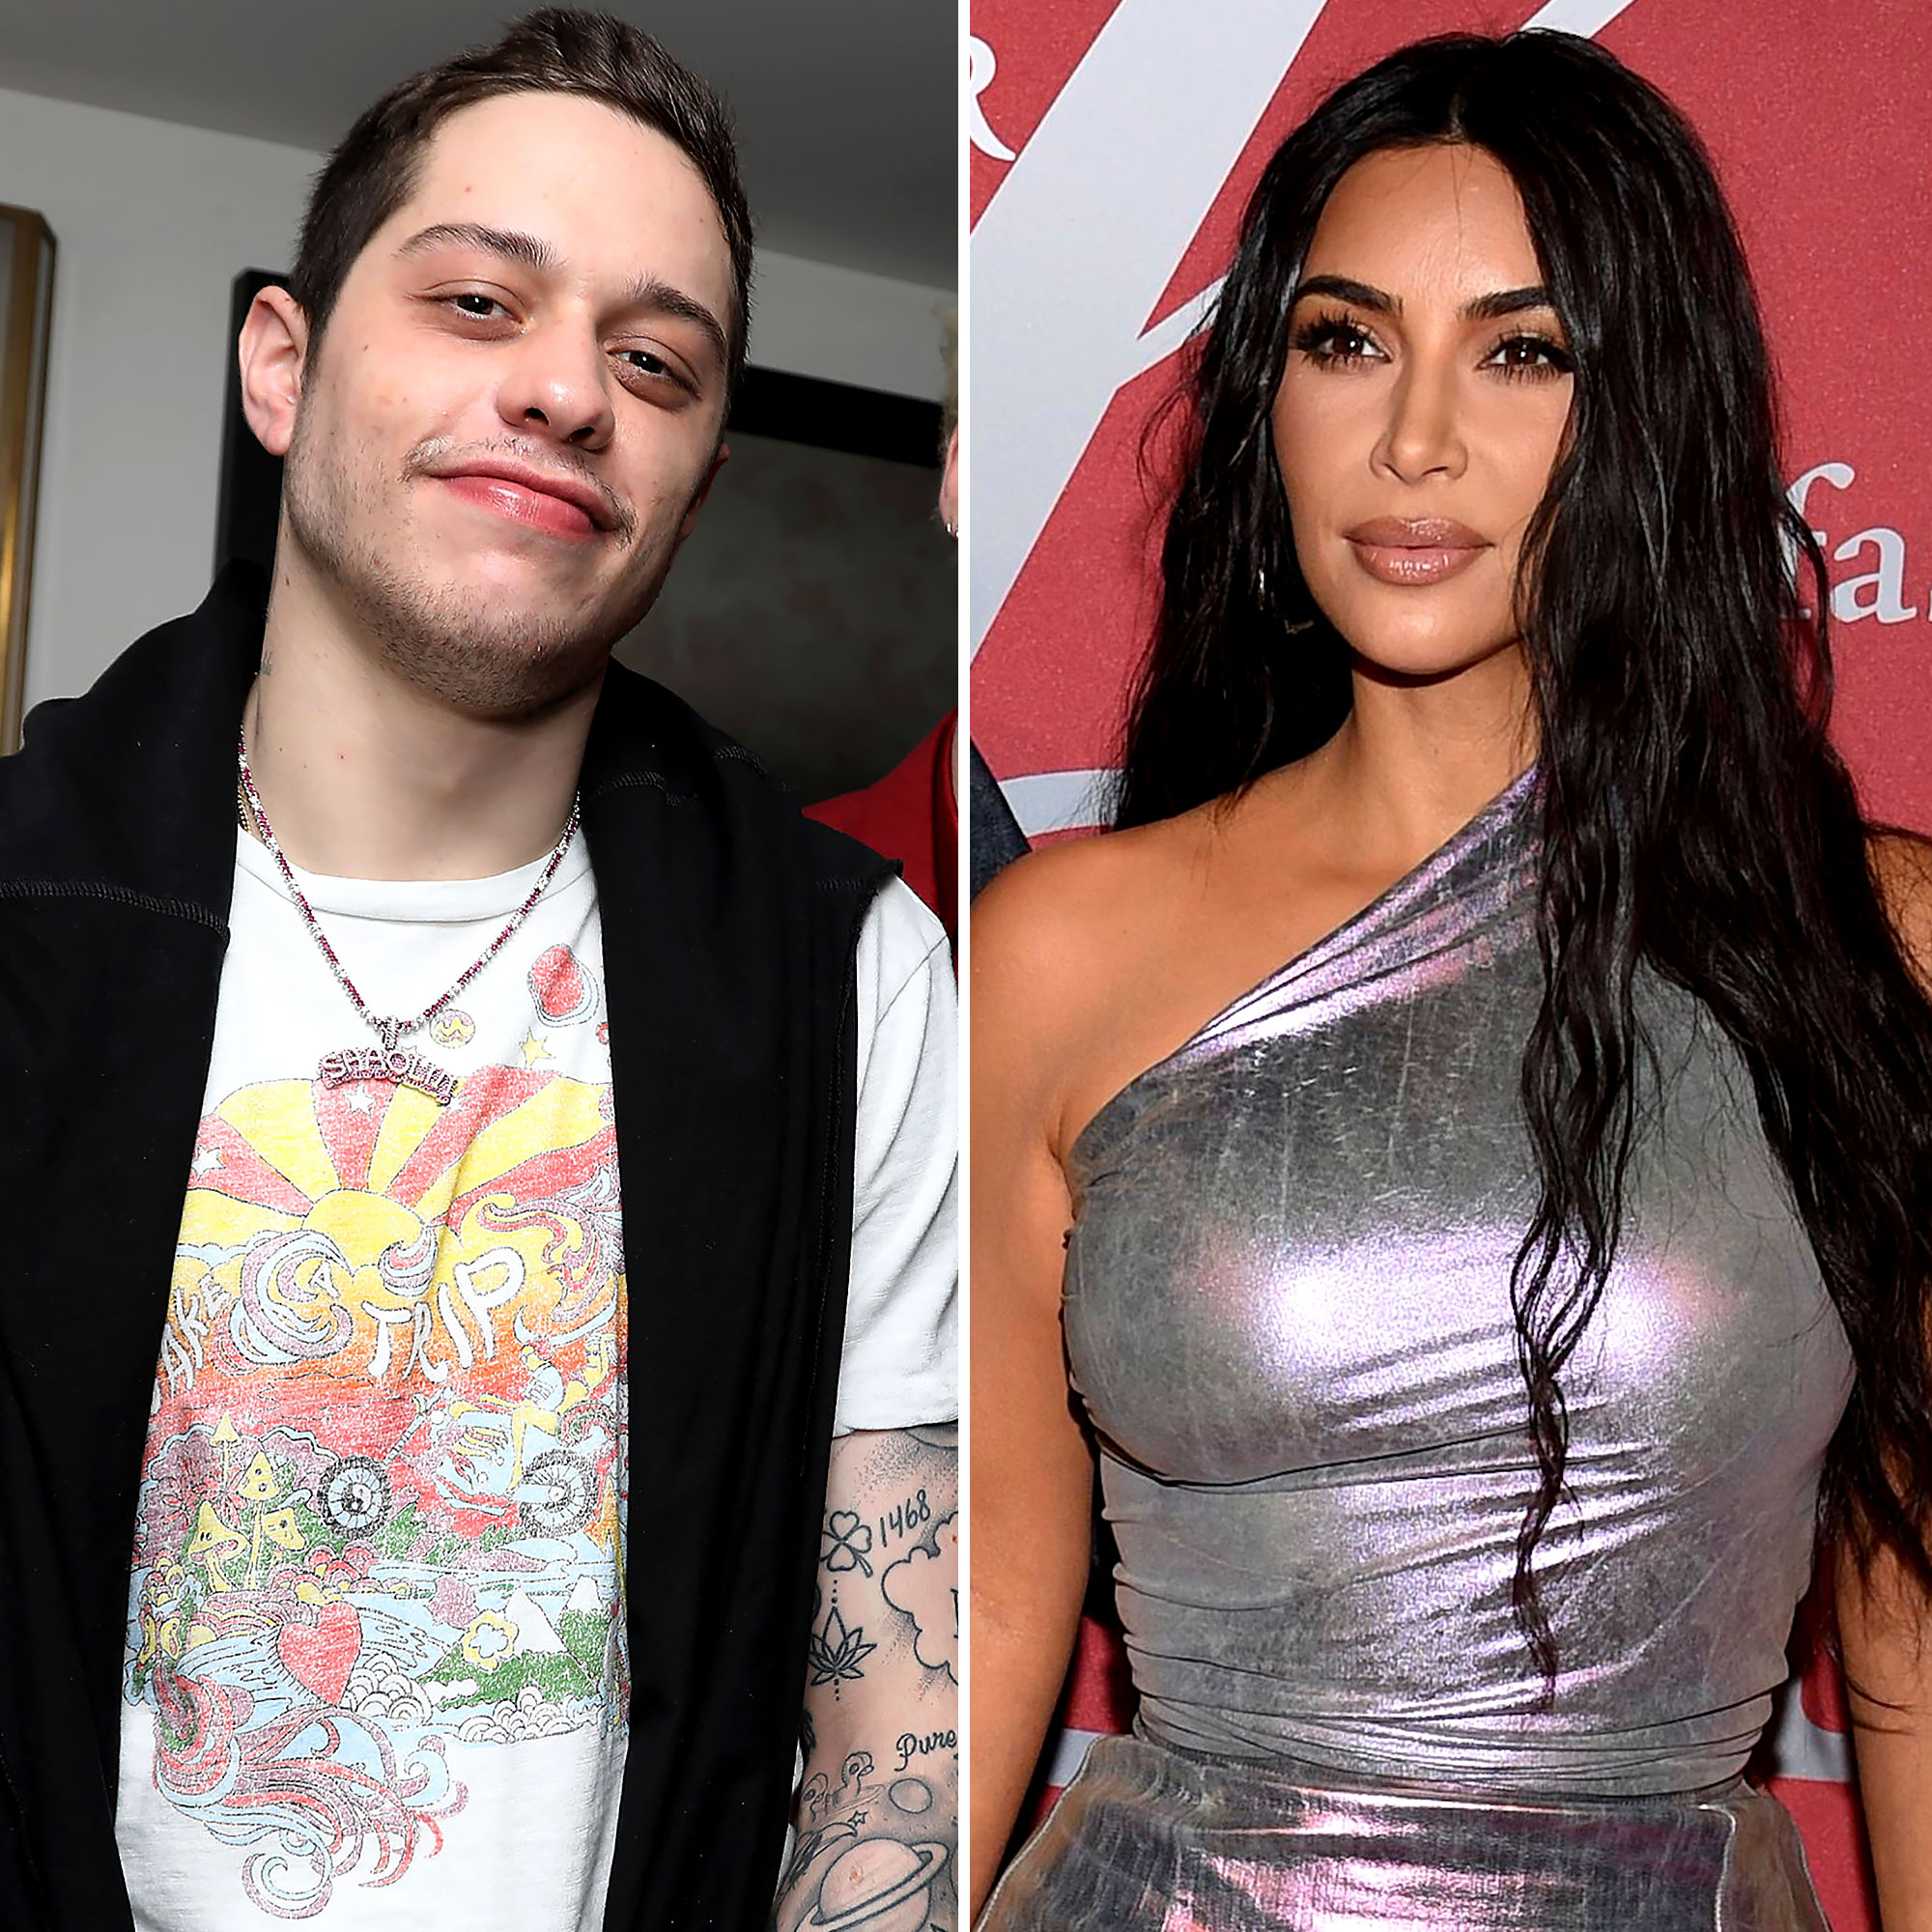 Kim Kardashian Anal Sex - Pete Davidson Says He's a 'Diamond' Amid Kim Kardashian Romance